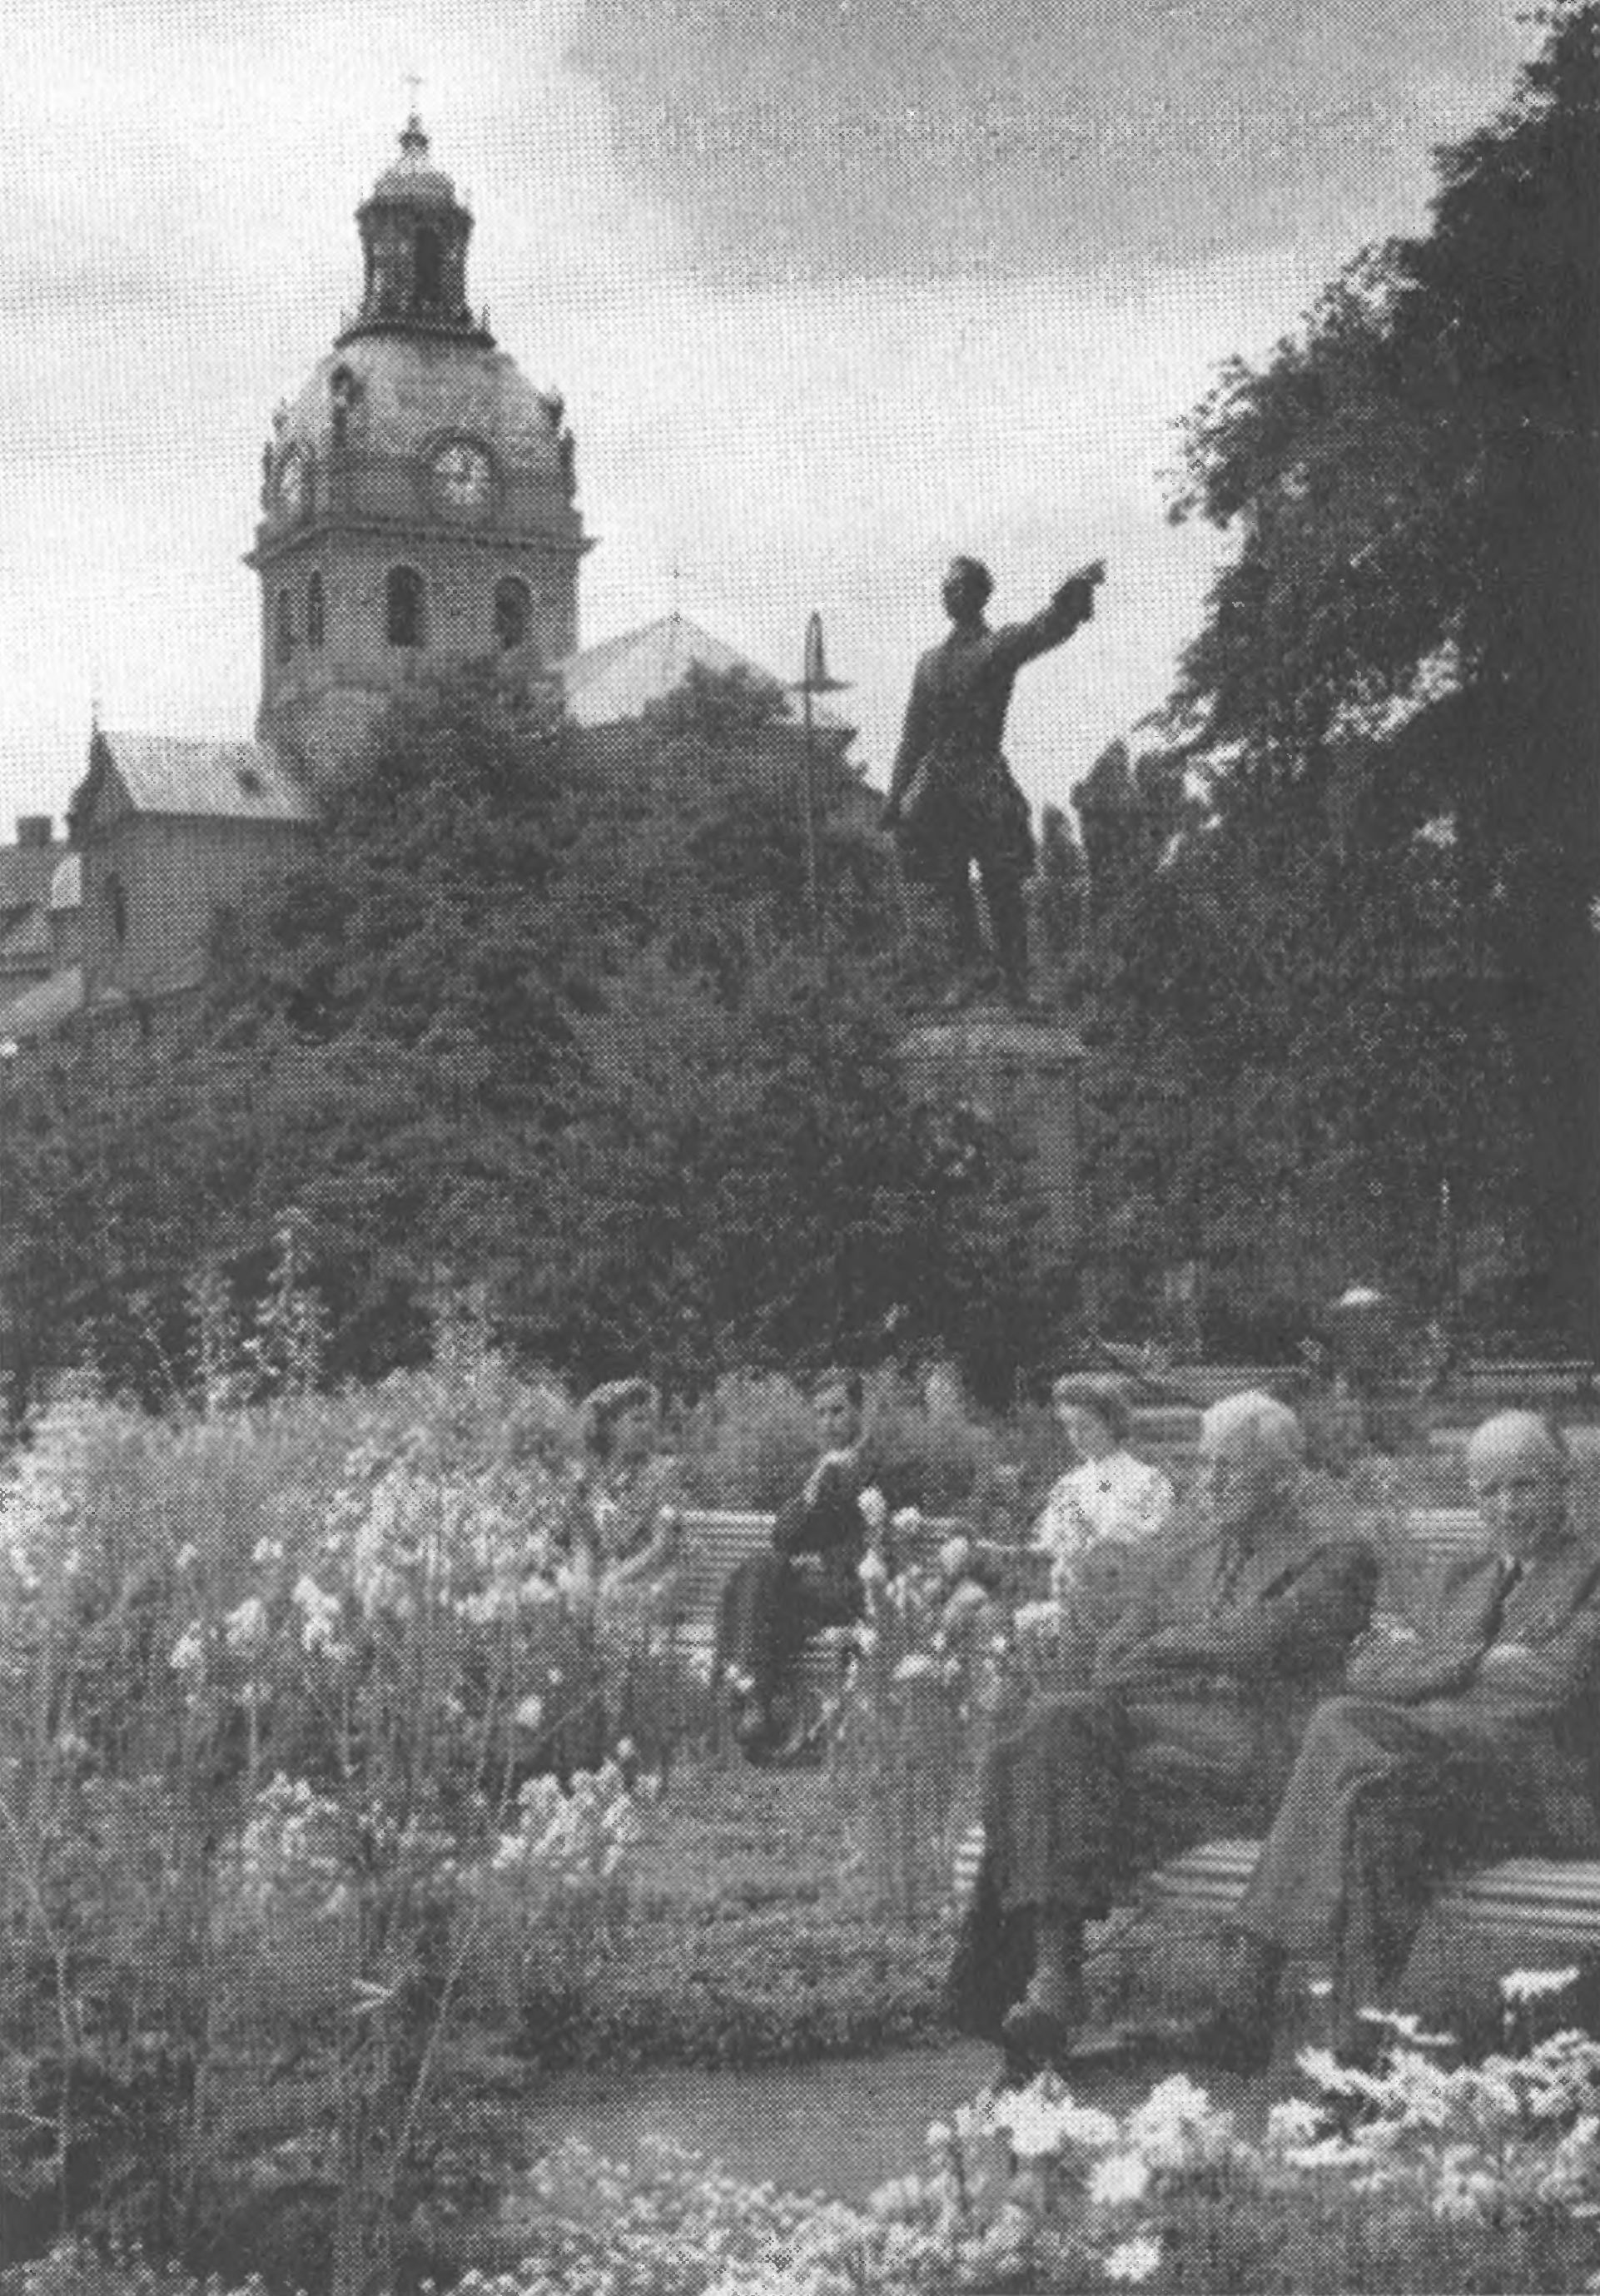 Центр Стокгольма. Королевский сад, в котором установлена статуя Карла XII (фотография 1947 г.)